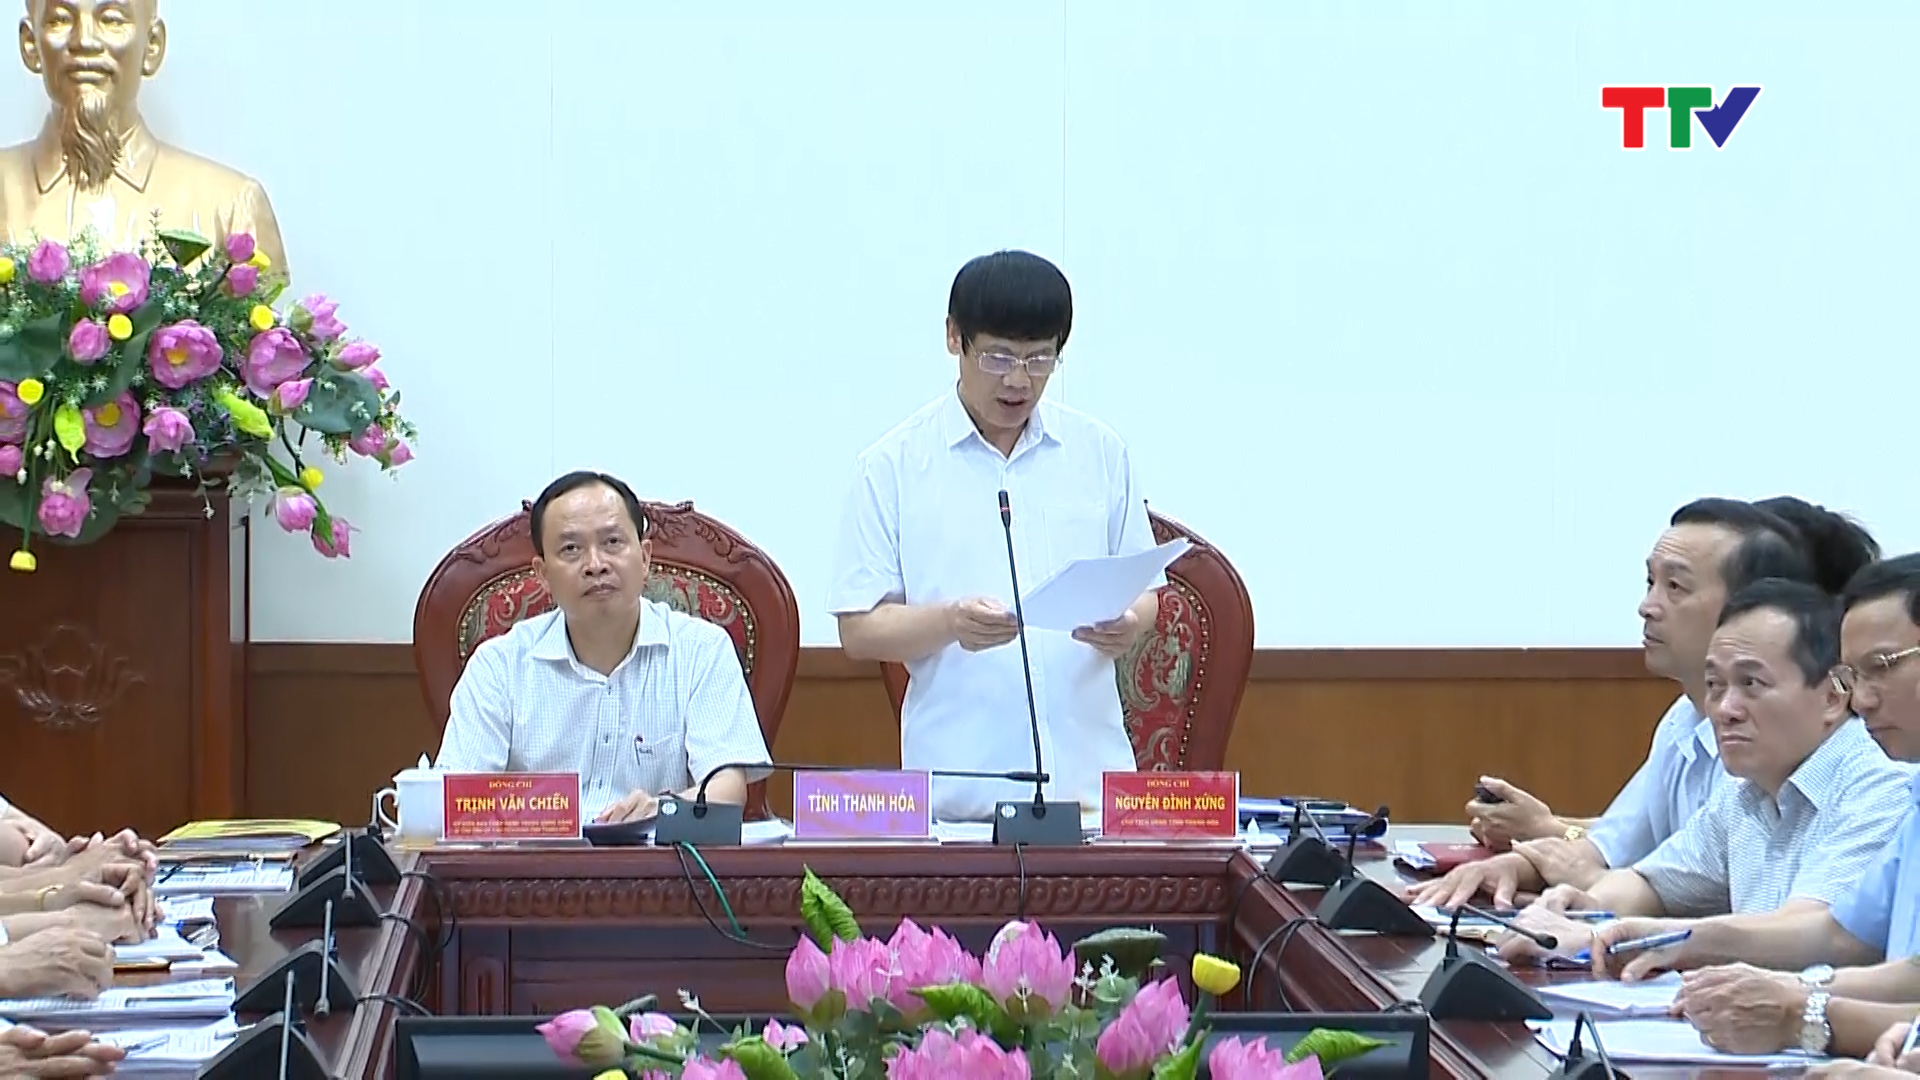 Chủ tịch UBND tỉnh Thanh Hoá Nguyễn Đình Xứng báo cáo với Chính phủ một số kết quả nổi bật của tỉnh trong 6 tháng đầu năm.